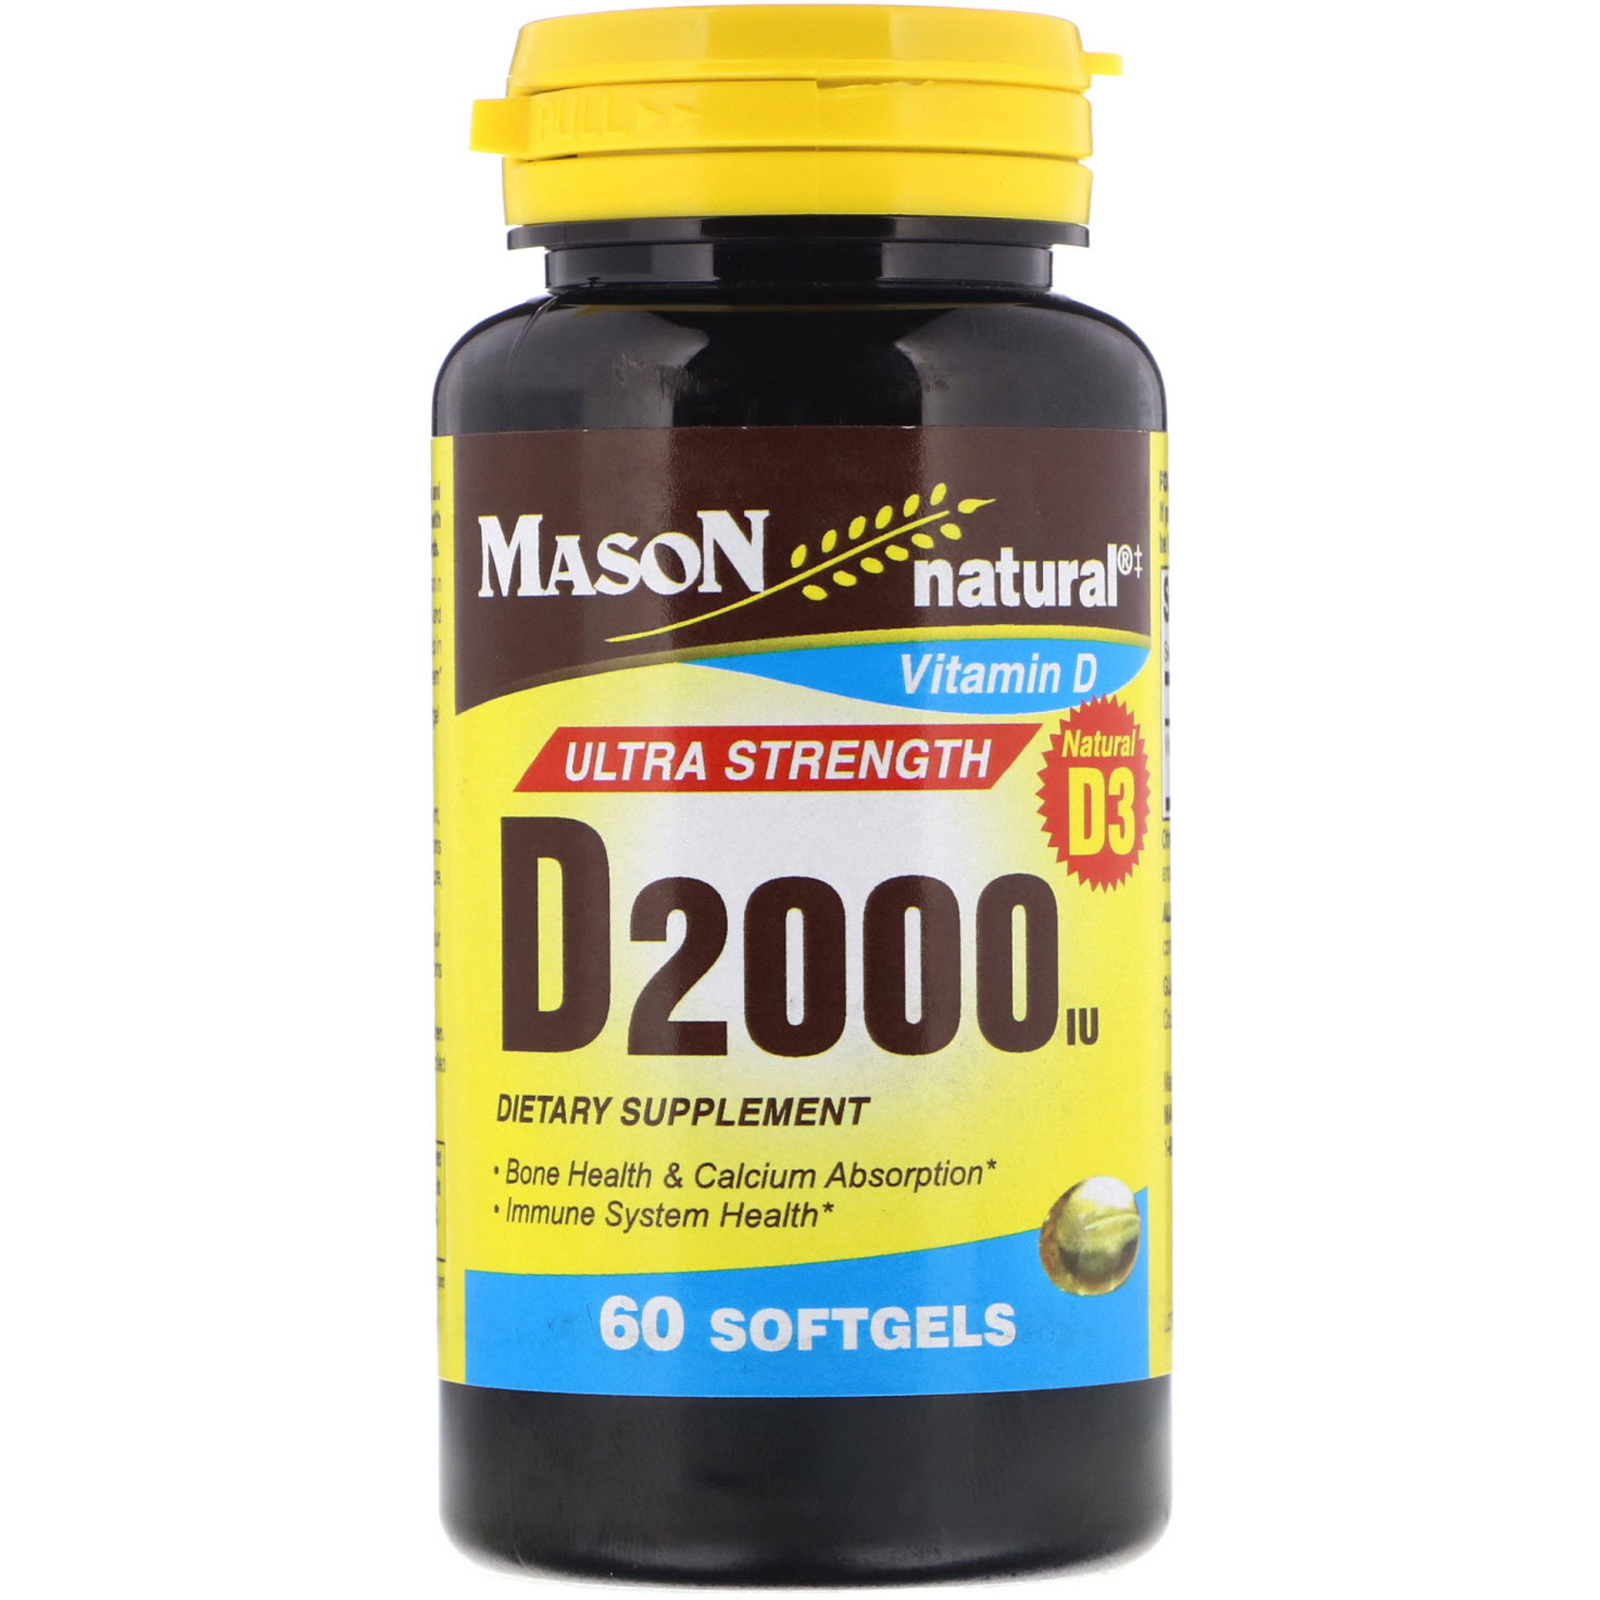 Mason Natural, Vitamin D, 2,000 IU, 60 Softgels - iHerb.com